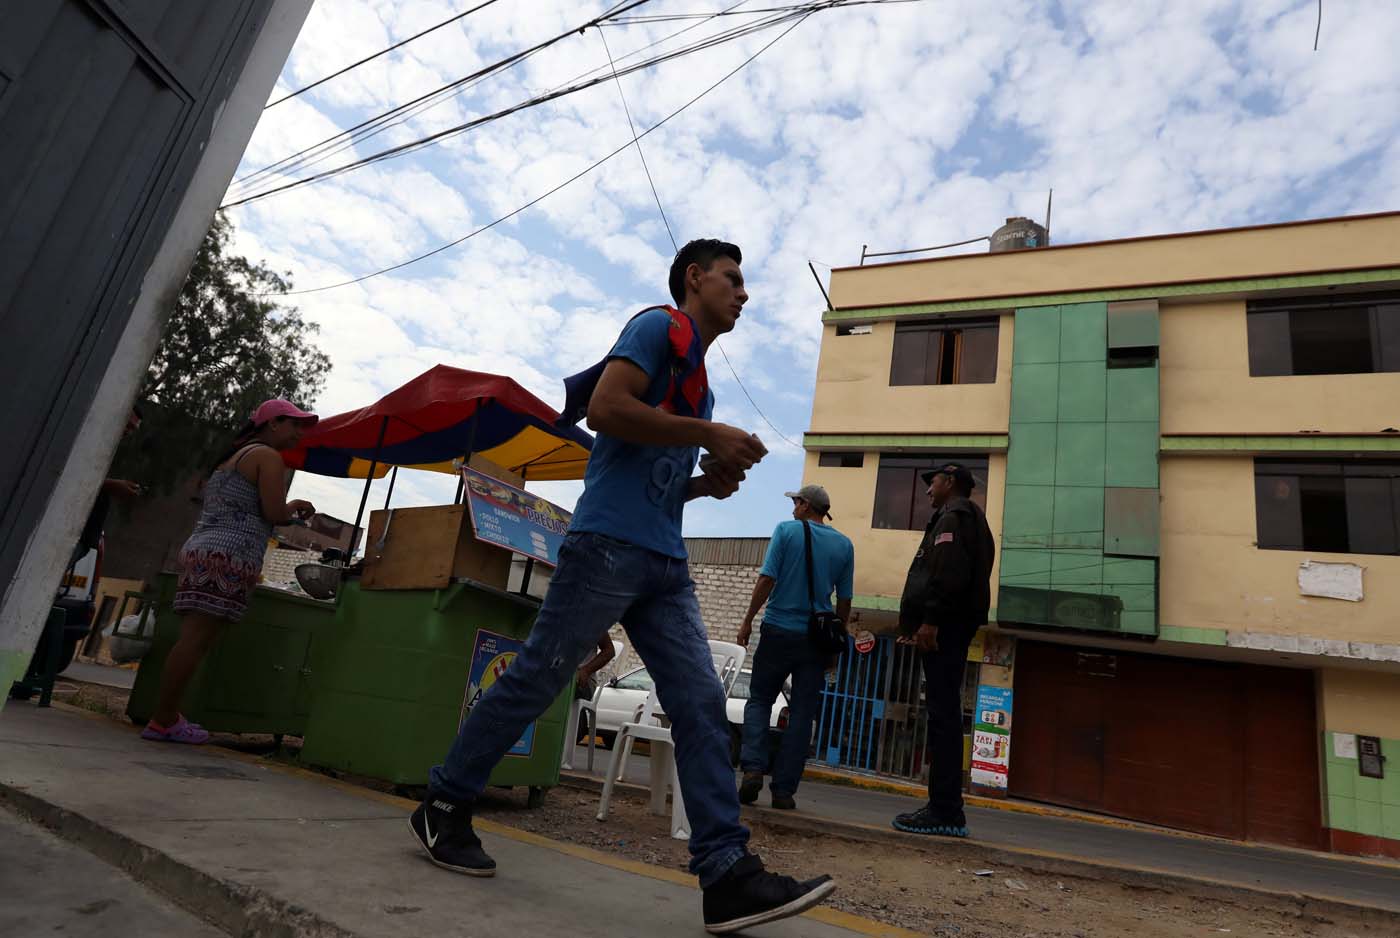 Los migrantes venezolanos caminan fuera de un refugio para los venezolanos en San Juan de Lurigancho, en las afueras de Lima, Perú 9 de marzo de 2018. REUTERS / Mariana Bazo